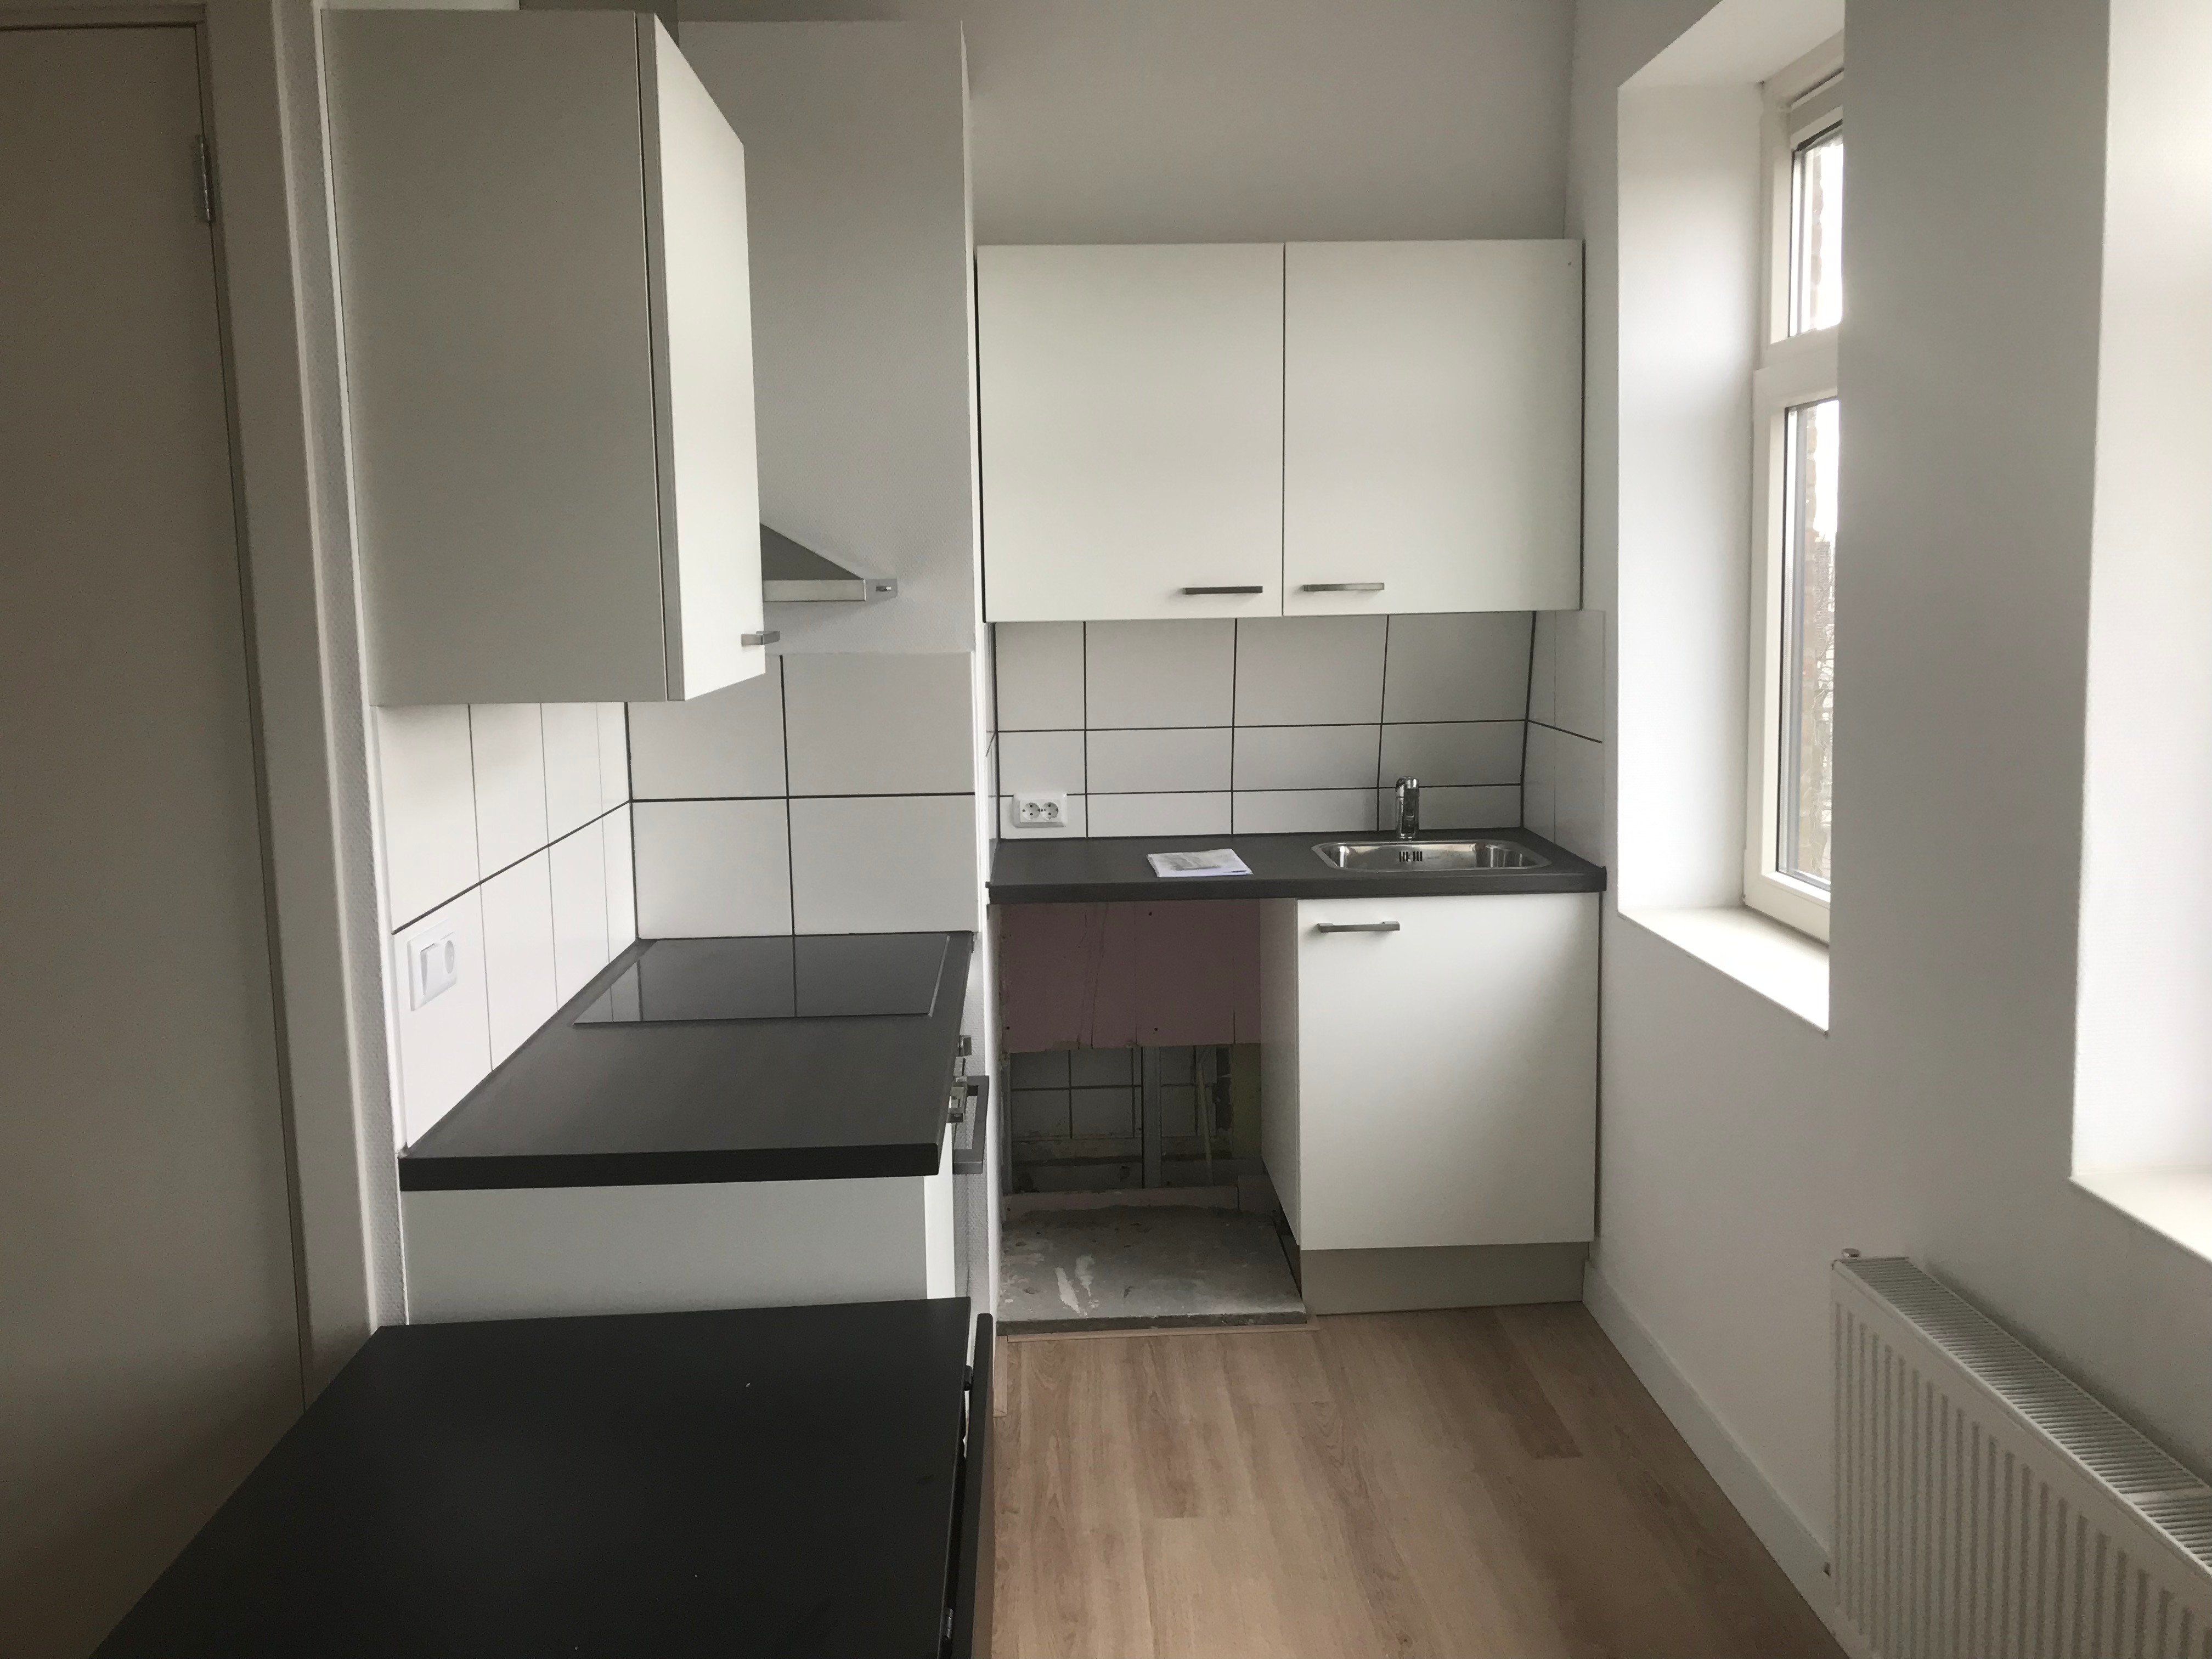 Woning / appartement - Rotterdam - Mathenesserweg 135